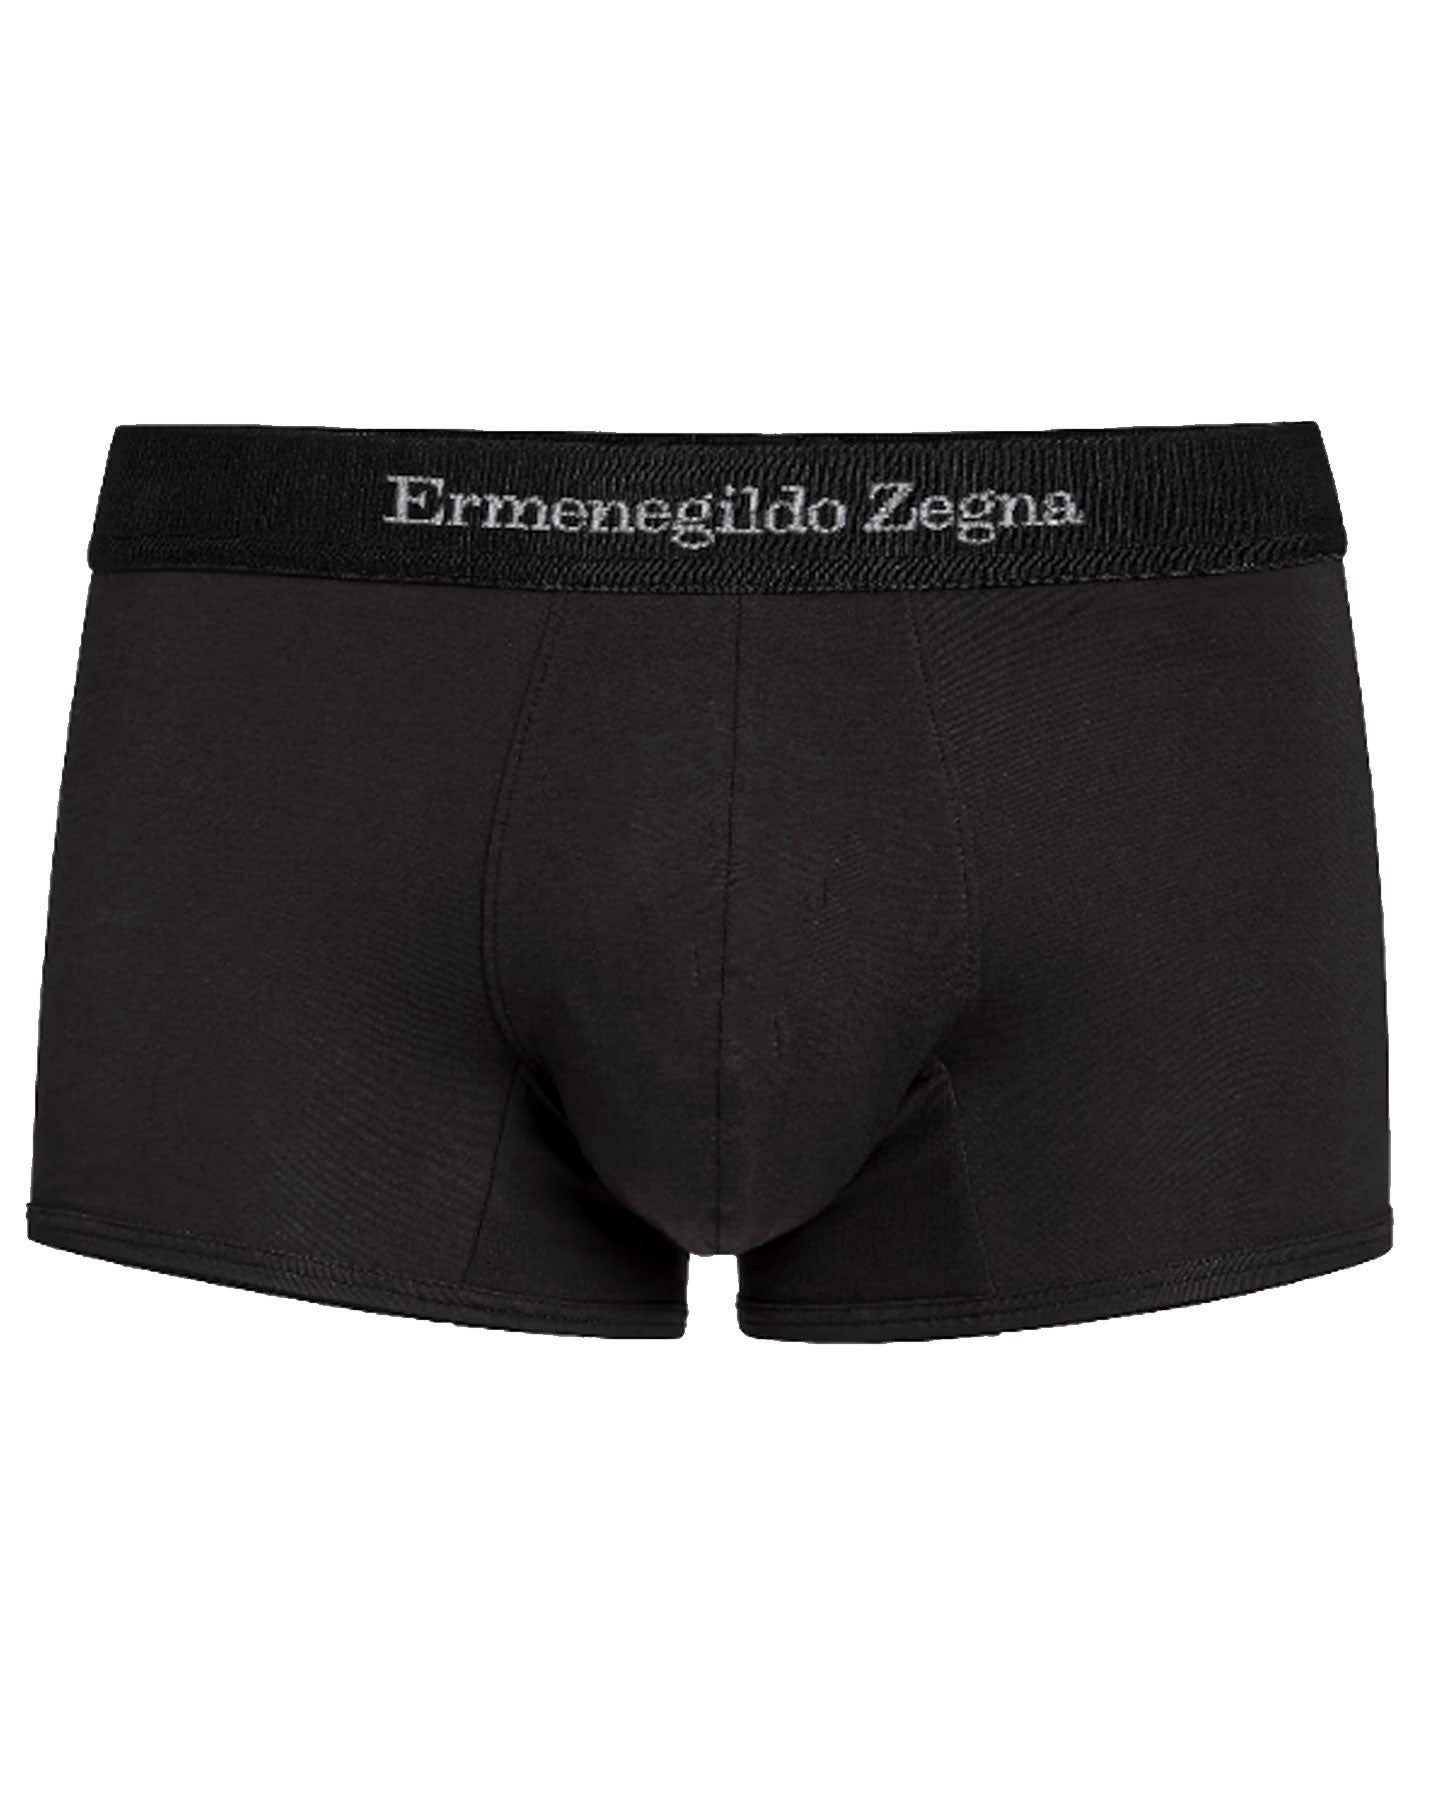 Ermenegildo Zegna Boxer Brief Black Men Underwear Stretch Cotton XXXL - Tie  Deals